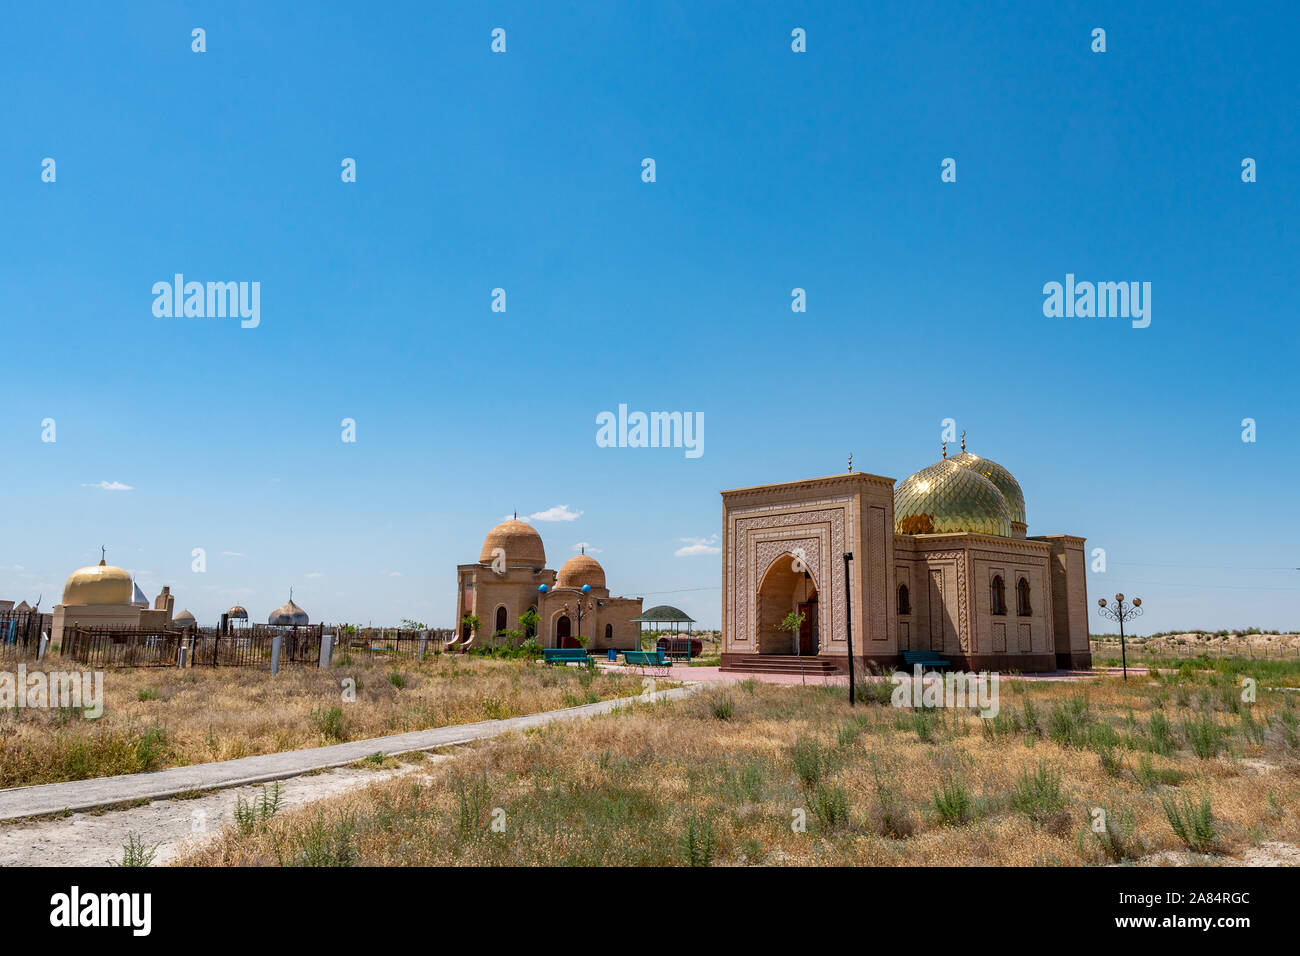 Arystan Turkestan Mausolée Bab vue à couper le souffle pittoresque de coupole d'or sur une des tombes Ciel bleu ensoleillé Jour Banque D'Images